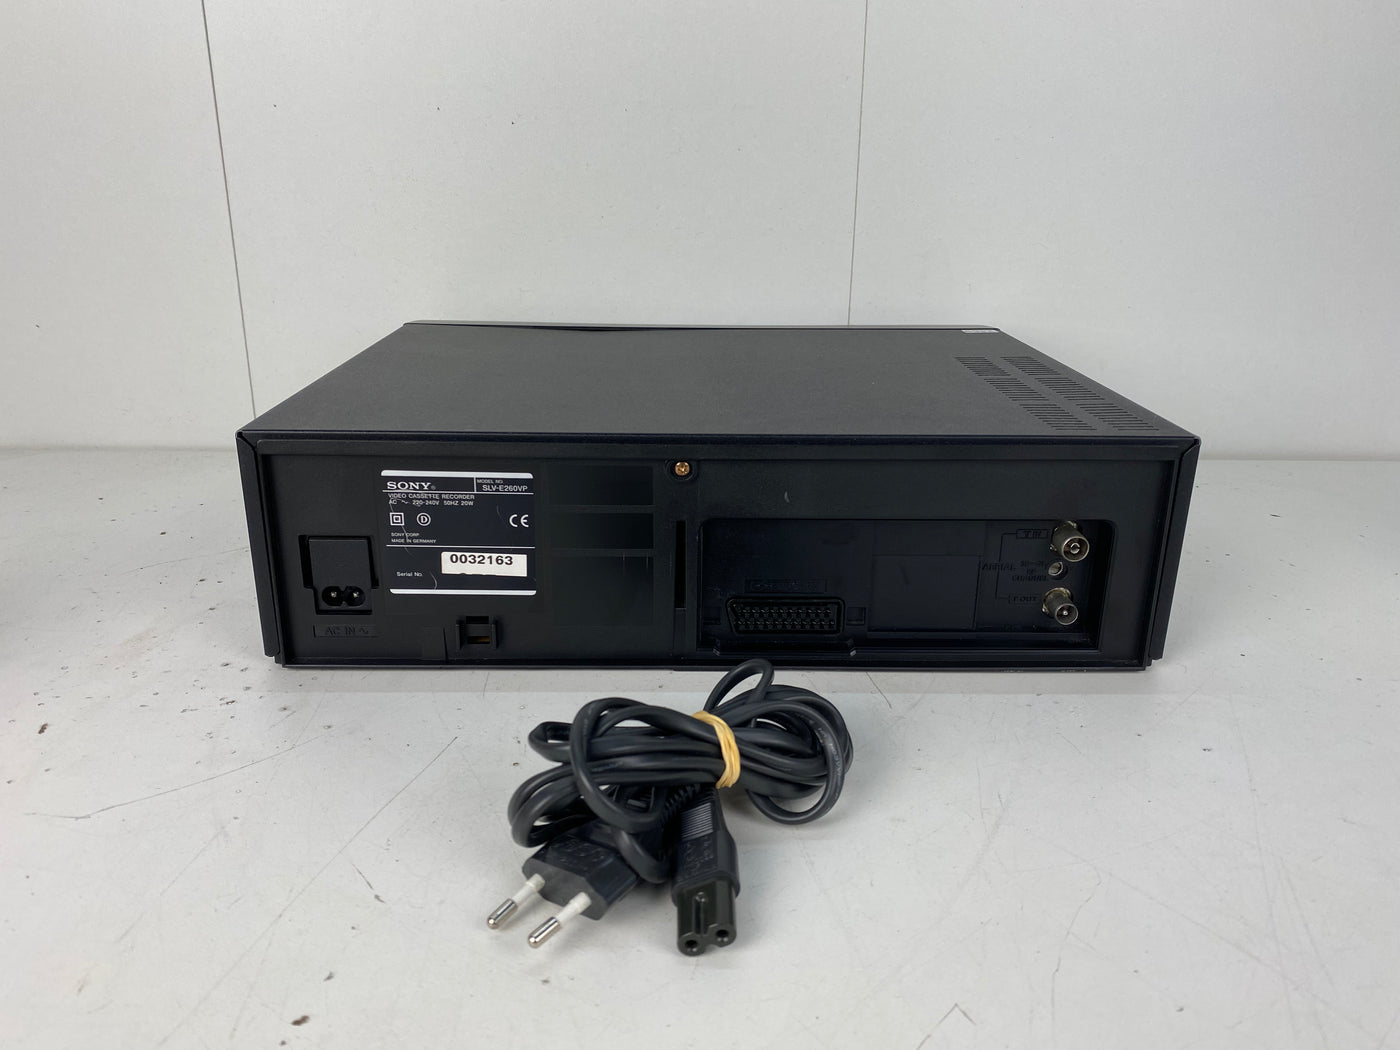 Sony SLV-E260 VHS Video Cassette Recorder